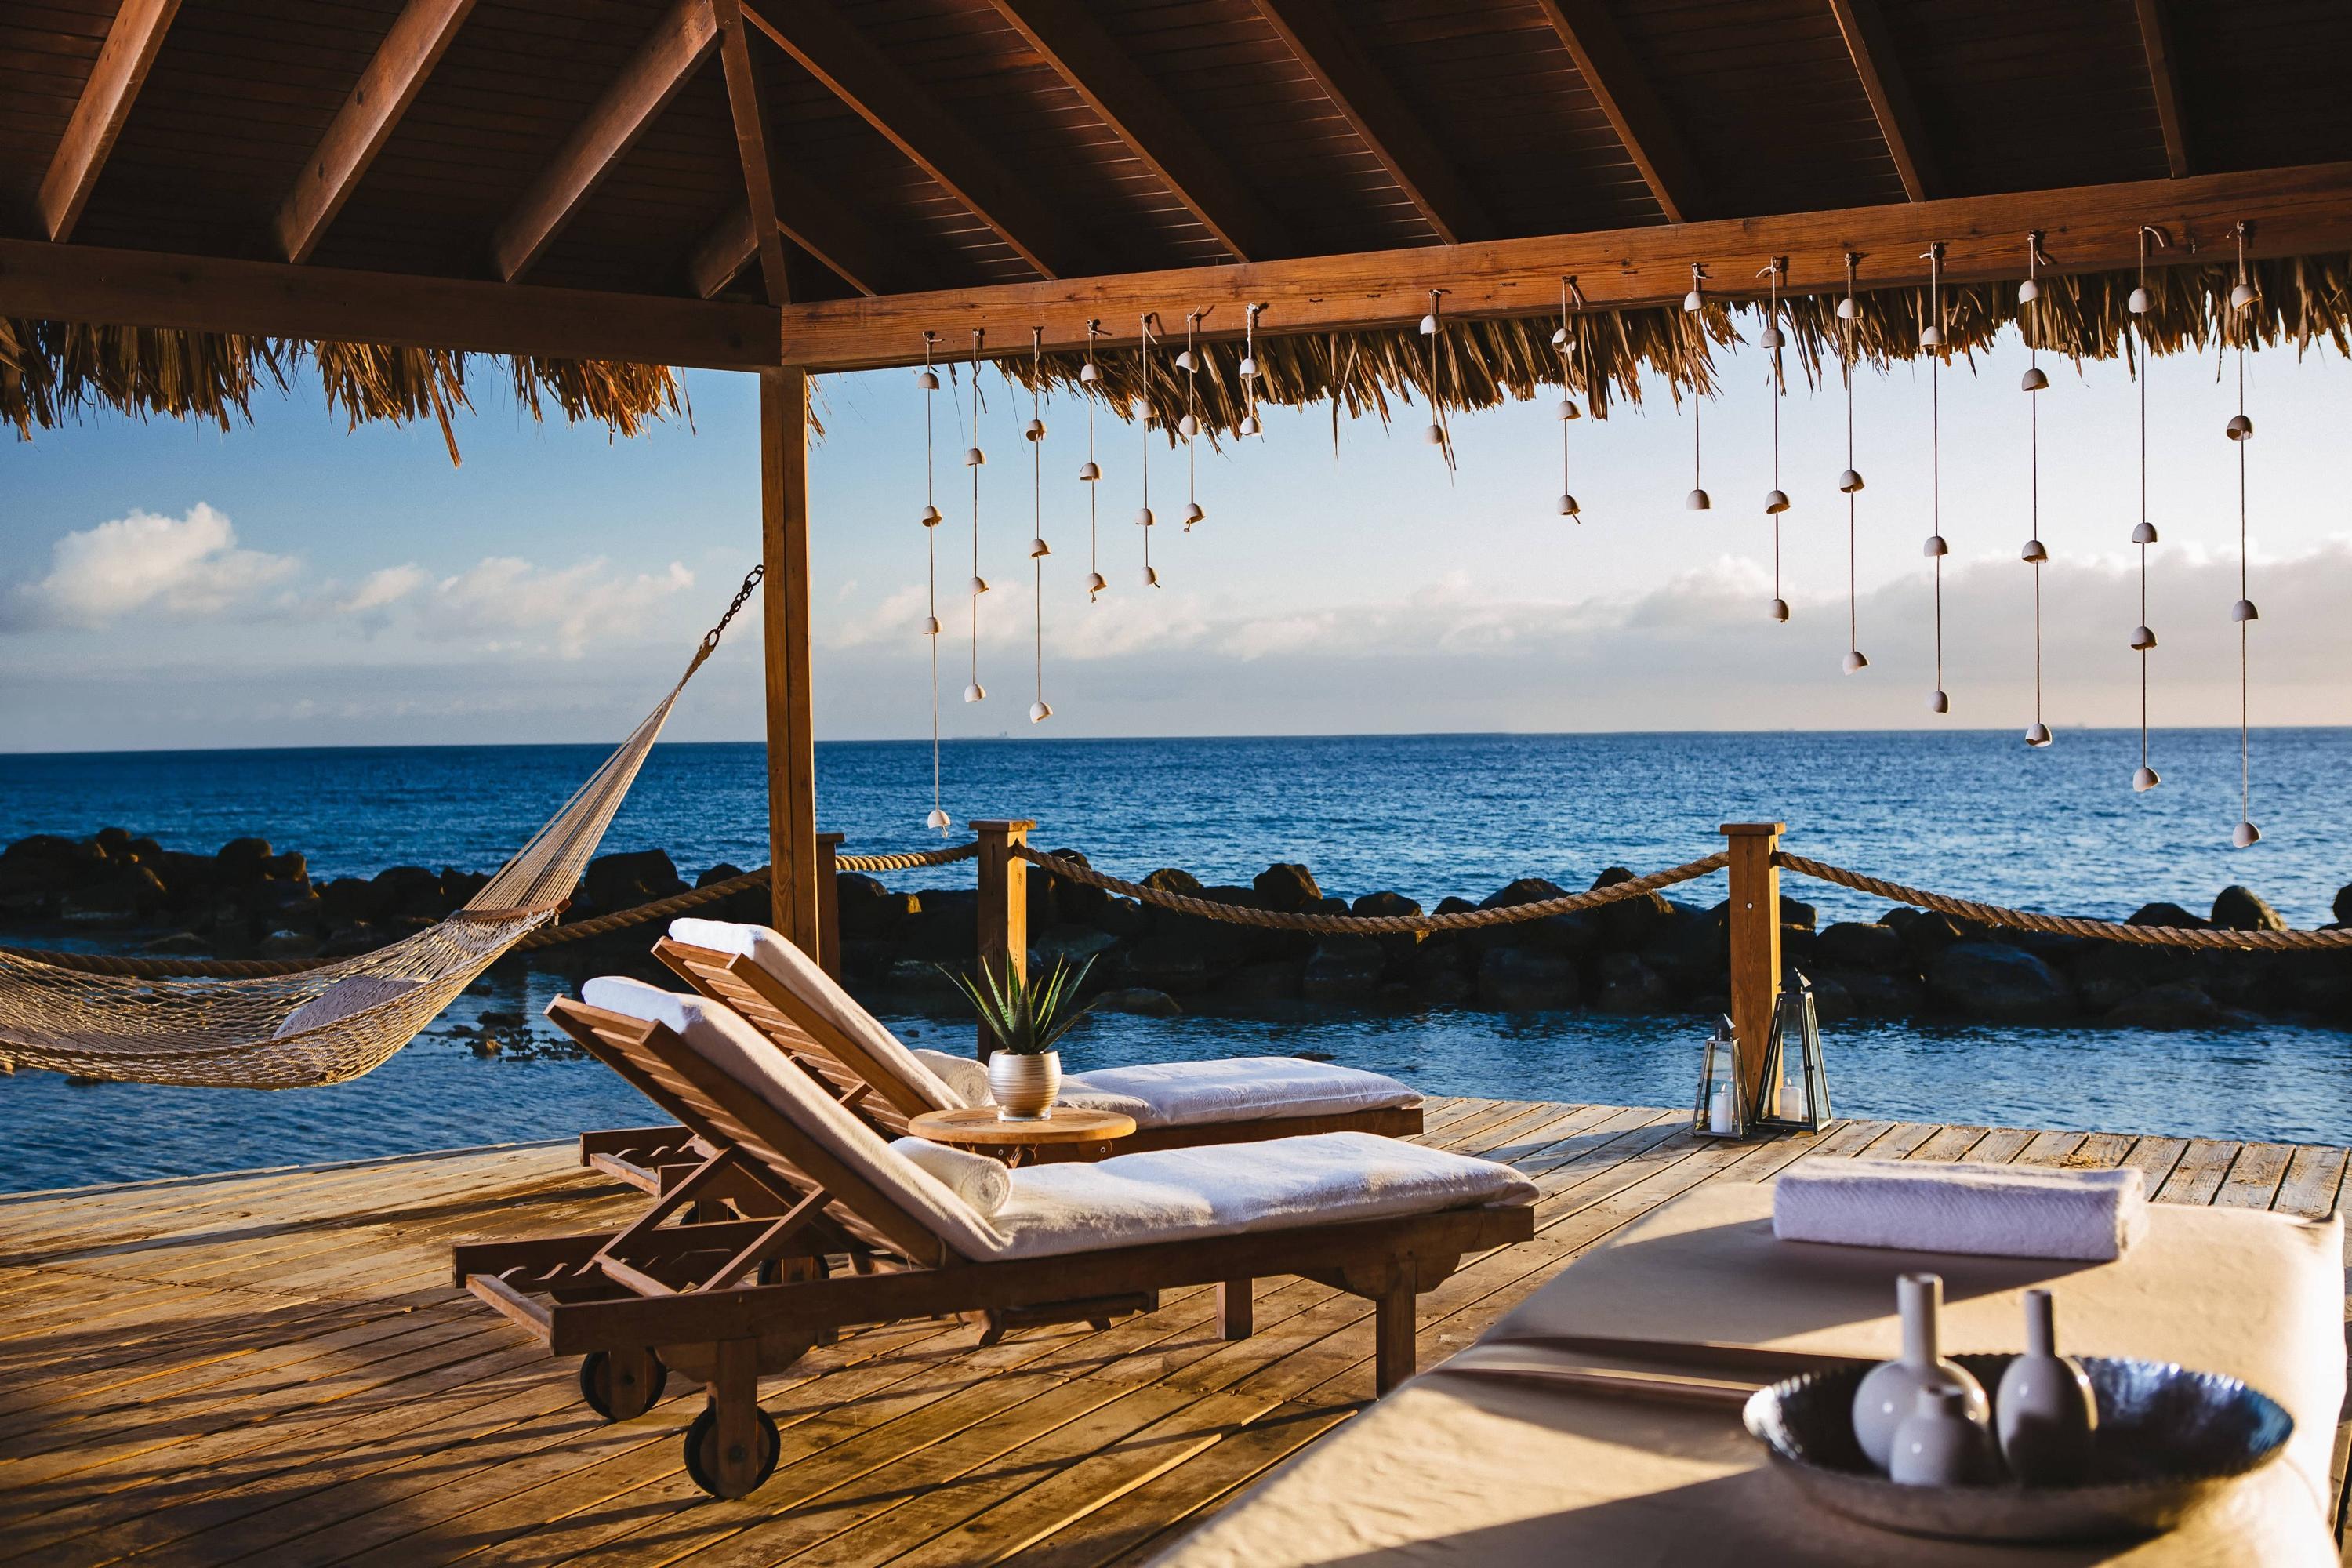 A Full-Review of the Renaissance Aruba Resort & Renaissance